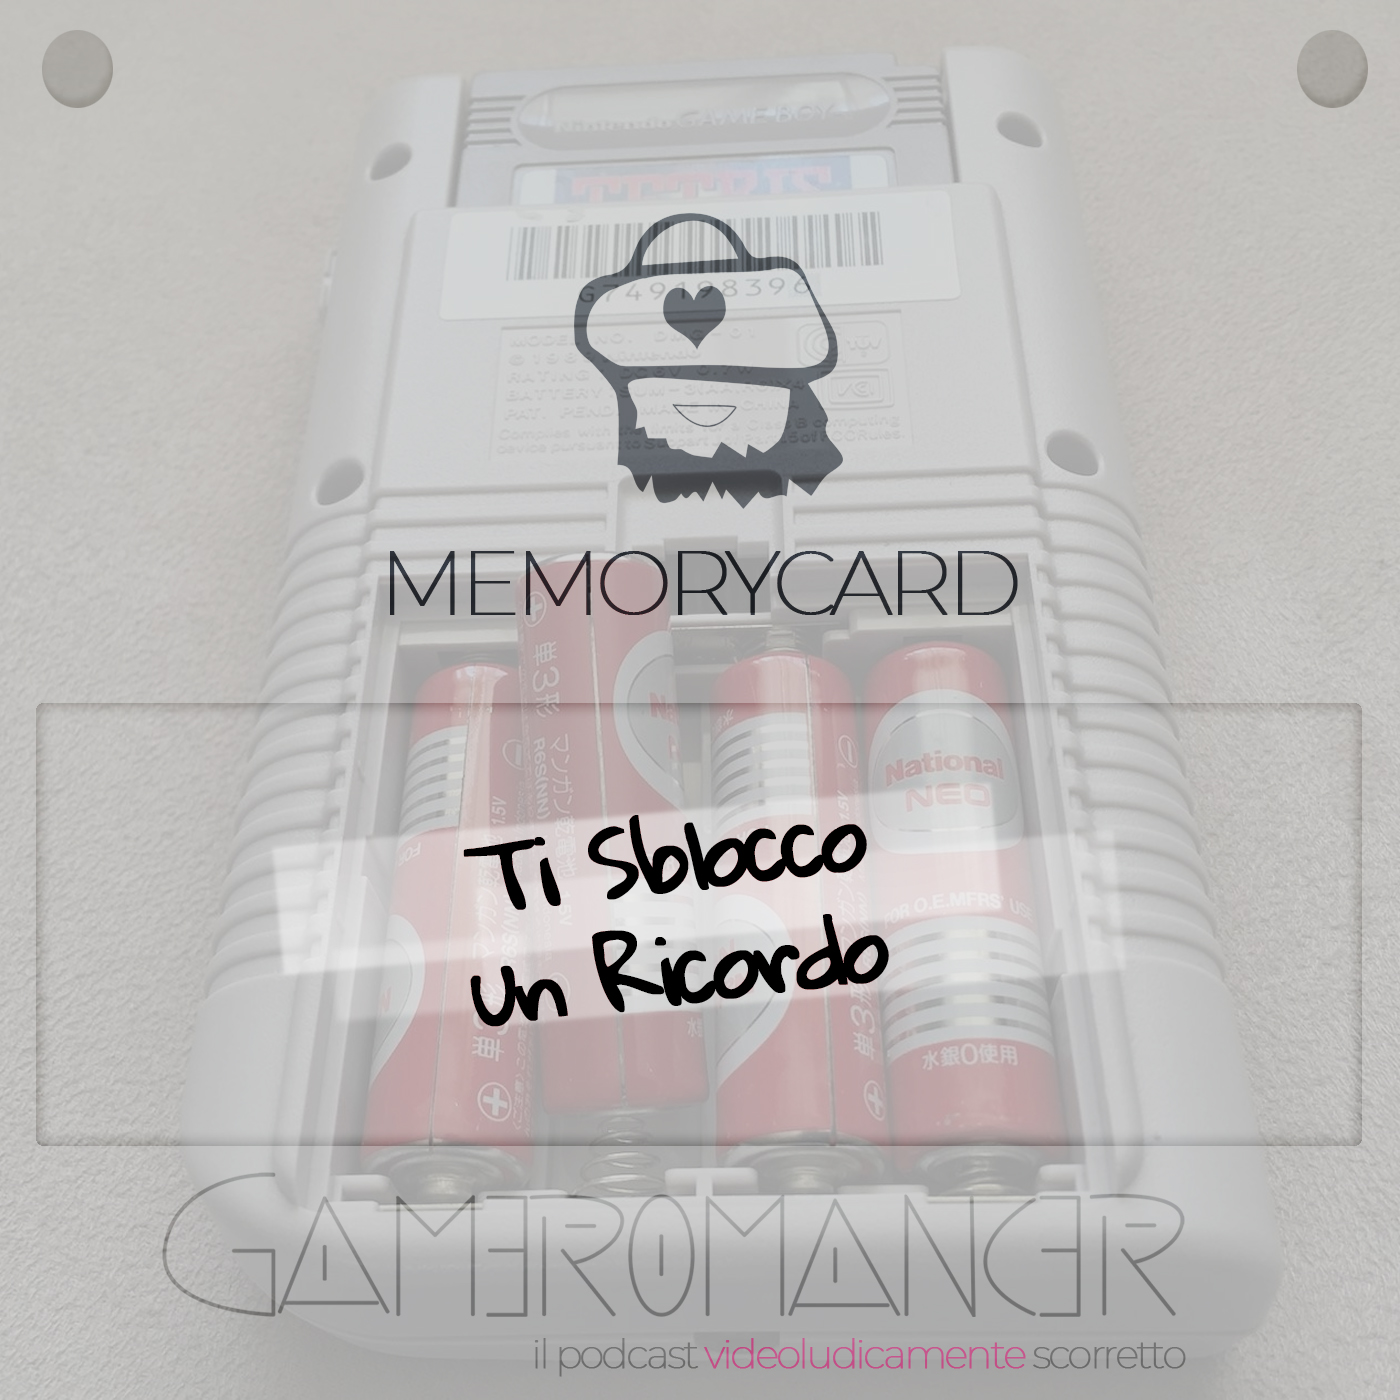 MemoryCard: Ti sbocco un ricordo